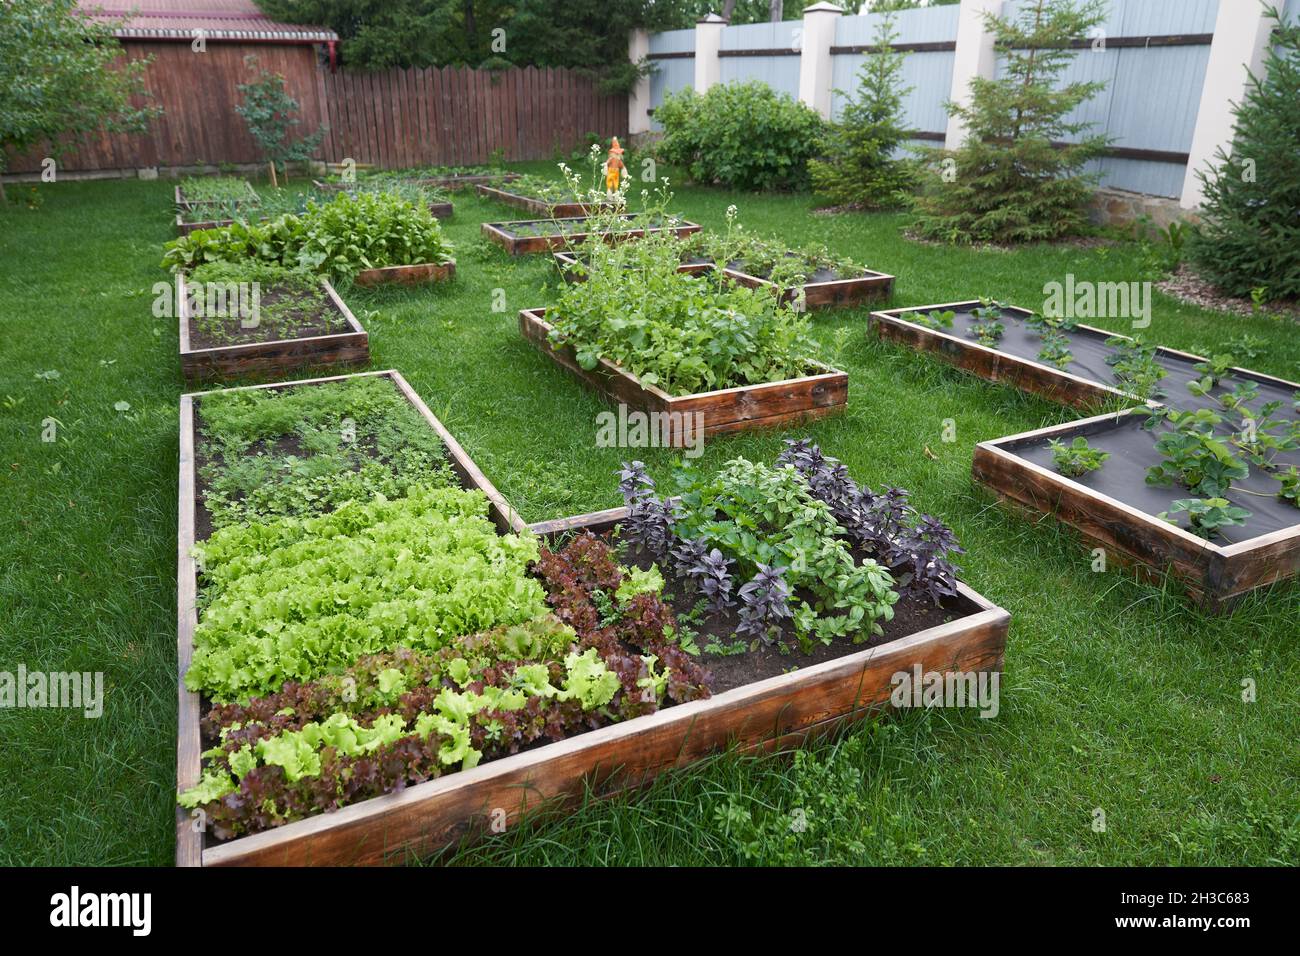 Der allgemeine Plan des Gartens. Grüner und roter Blattsalat, Basilikum, Erbsen und Erdbeeren in einem Gartenbeet anbauen. Hintergrund für die Gartenarbeit. Hochwertige Fotos Stockfoto